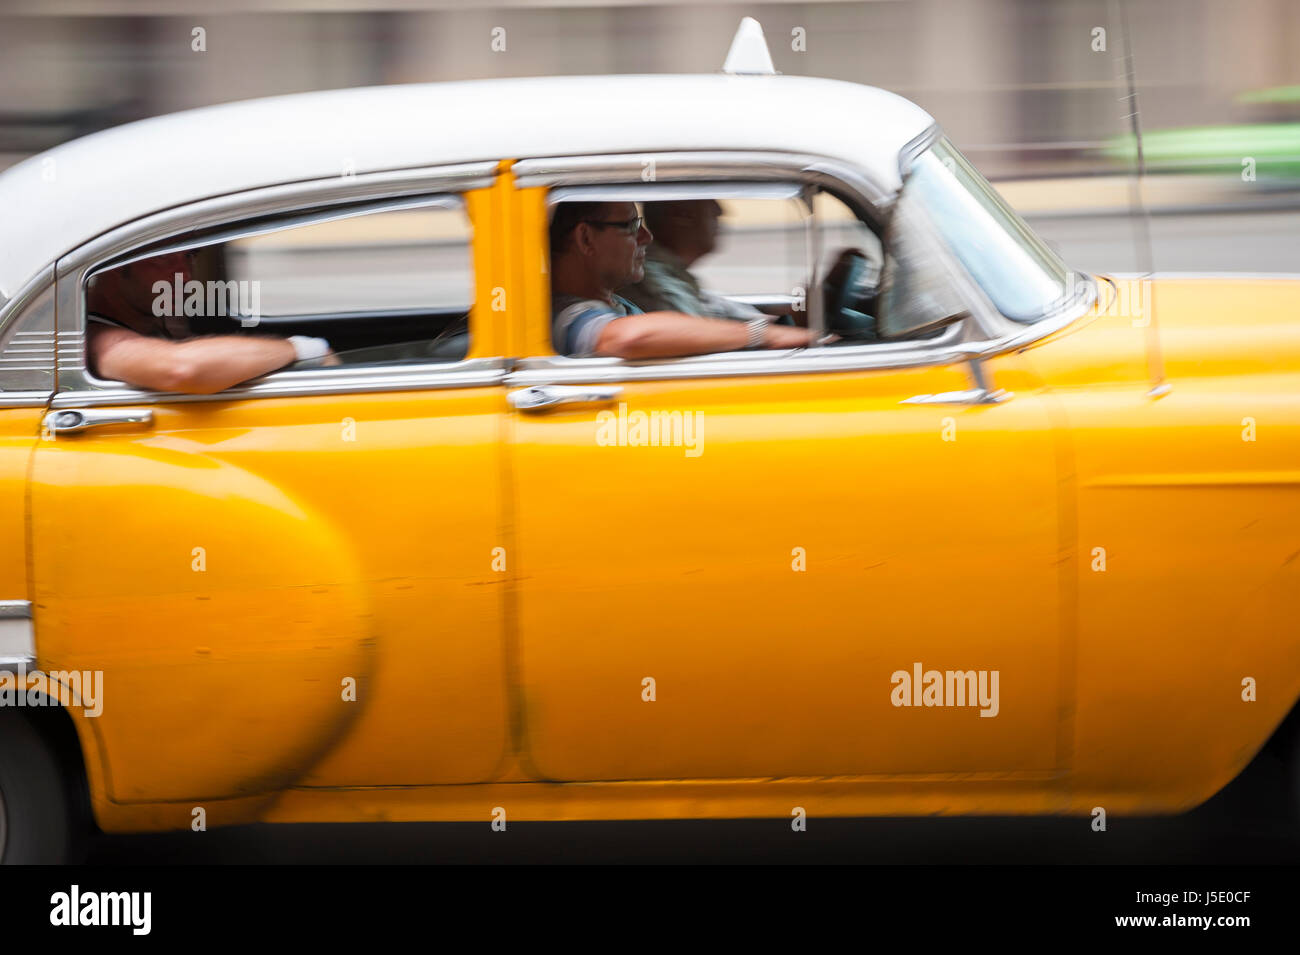 L'Avana - Giugno, 2011: Colore giallo brillante vintage americano auto lavorando come condividere un taxi impiega i passeggeri lungo il lungomare Malecon street. Foto Stock